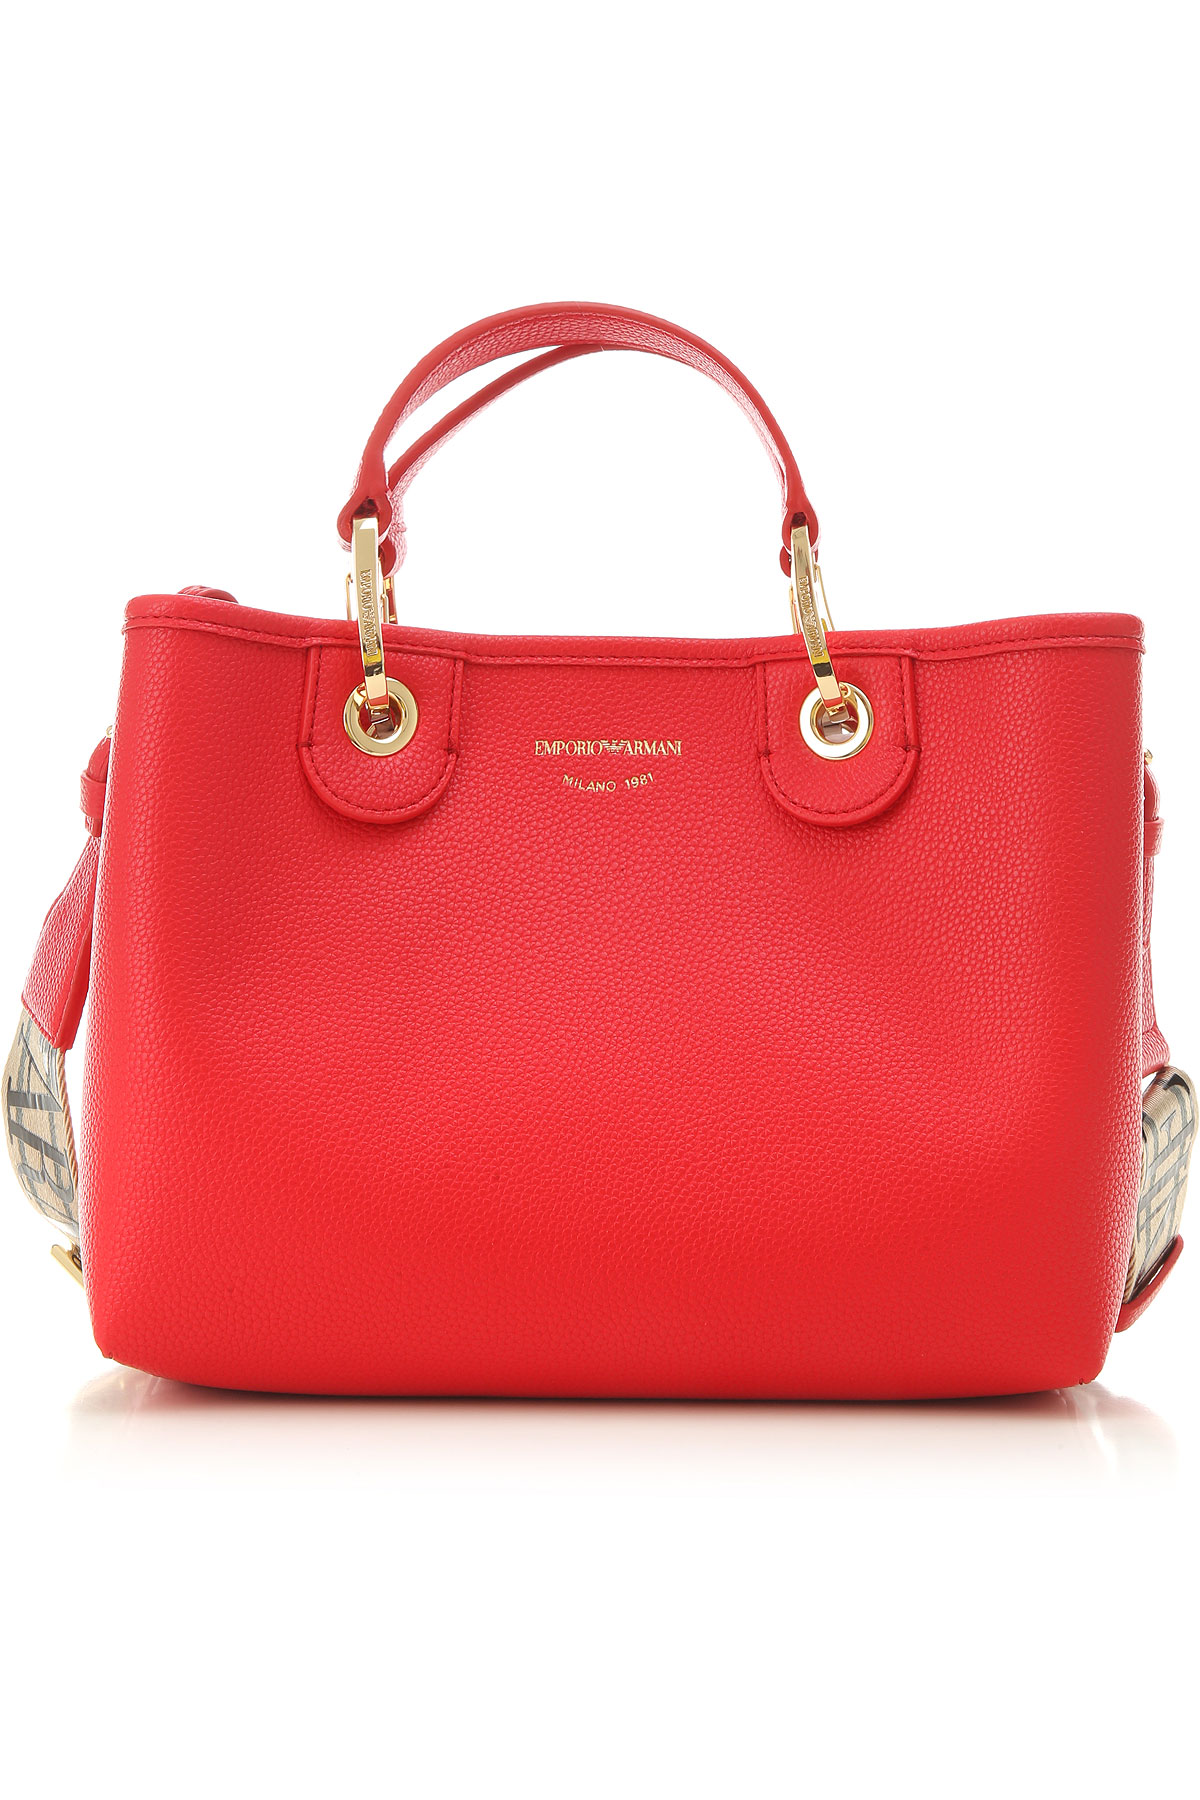 Handbags Emporio Armani, Style code: y3d166-yf05b-85355